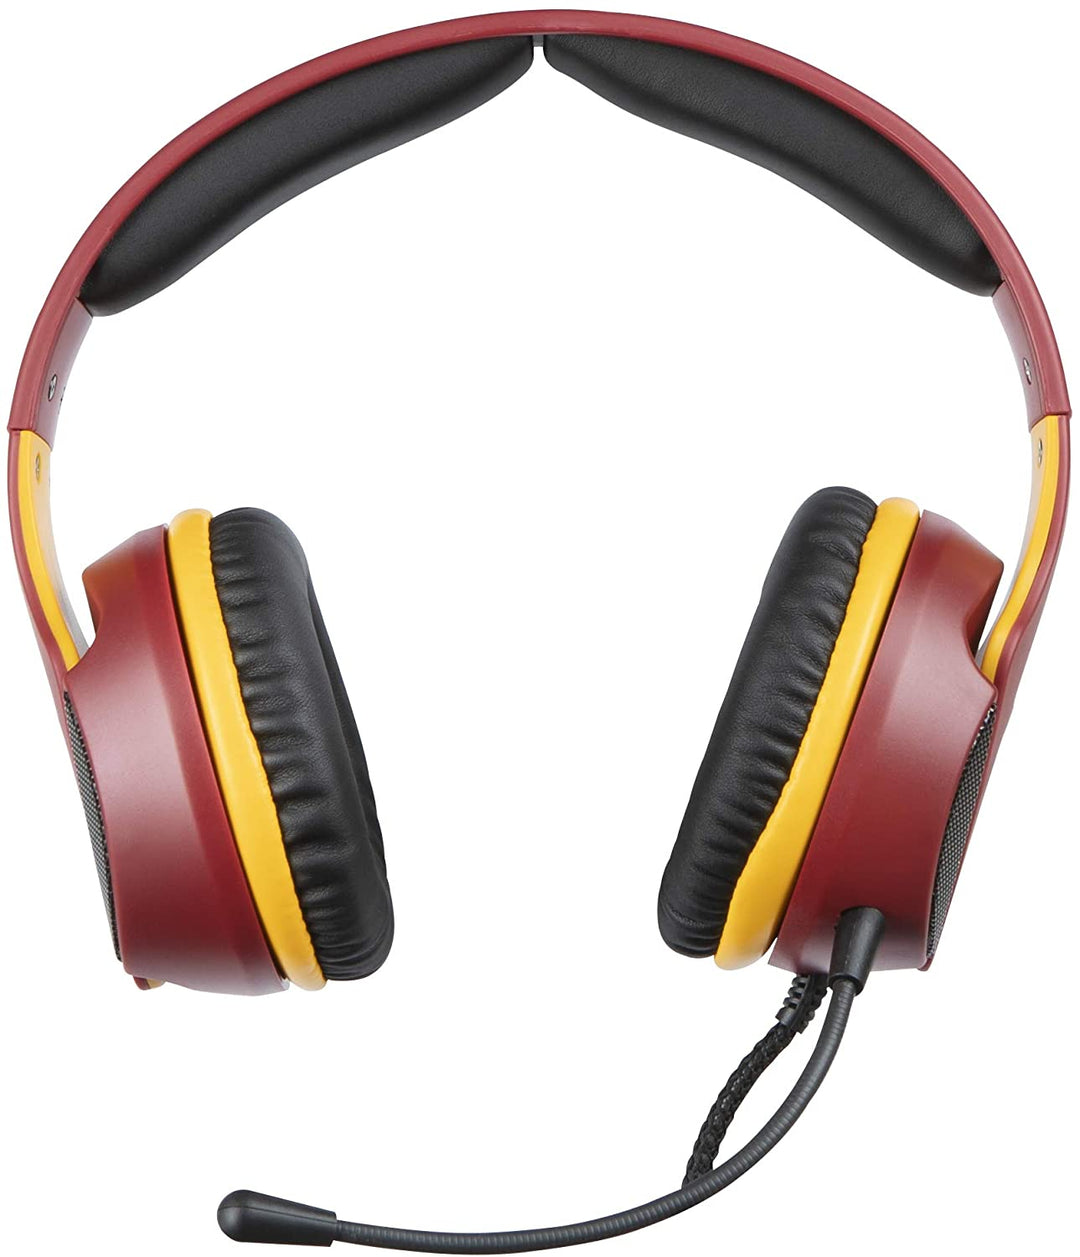 AS Roma Kabelgebundenes Gaming-Headset/Headset (PS4////)